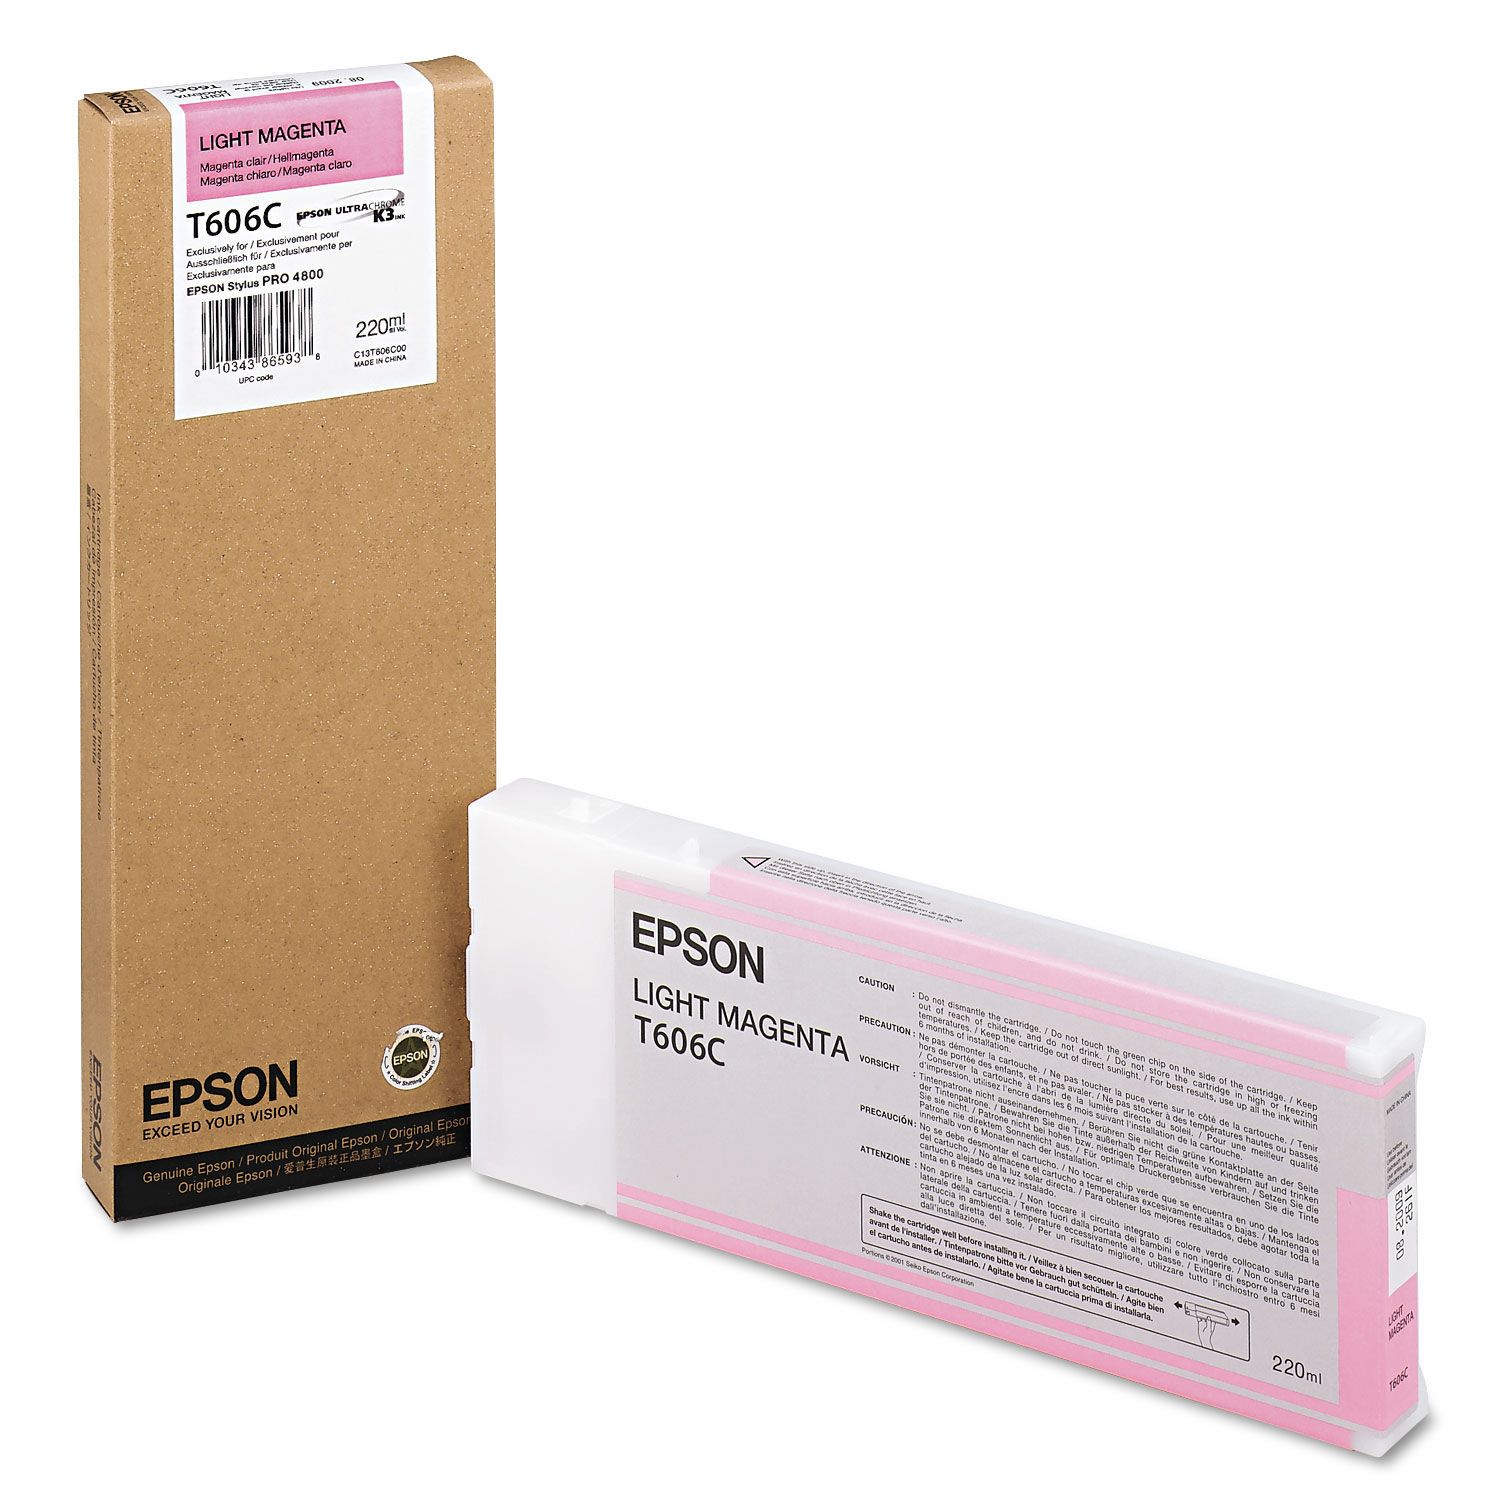 Absolute Toner Original OEM Genuine T606C00 EPSON Ultrachrome Light Magenta Cartridge Original Epson Cartridges